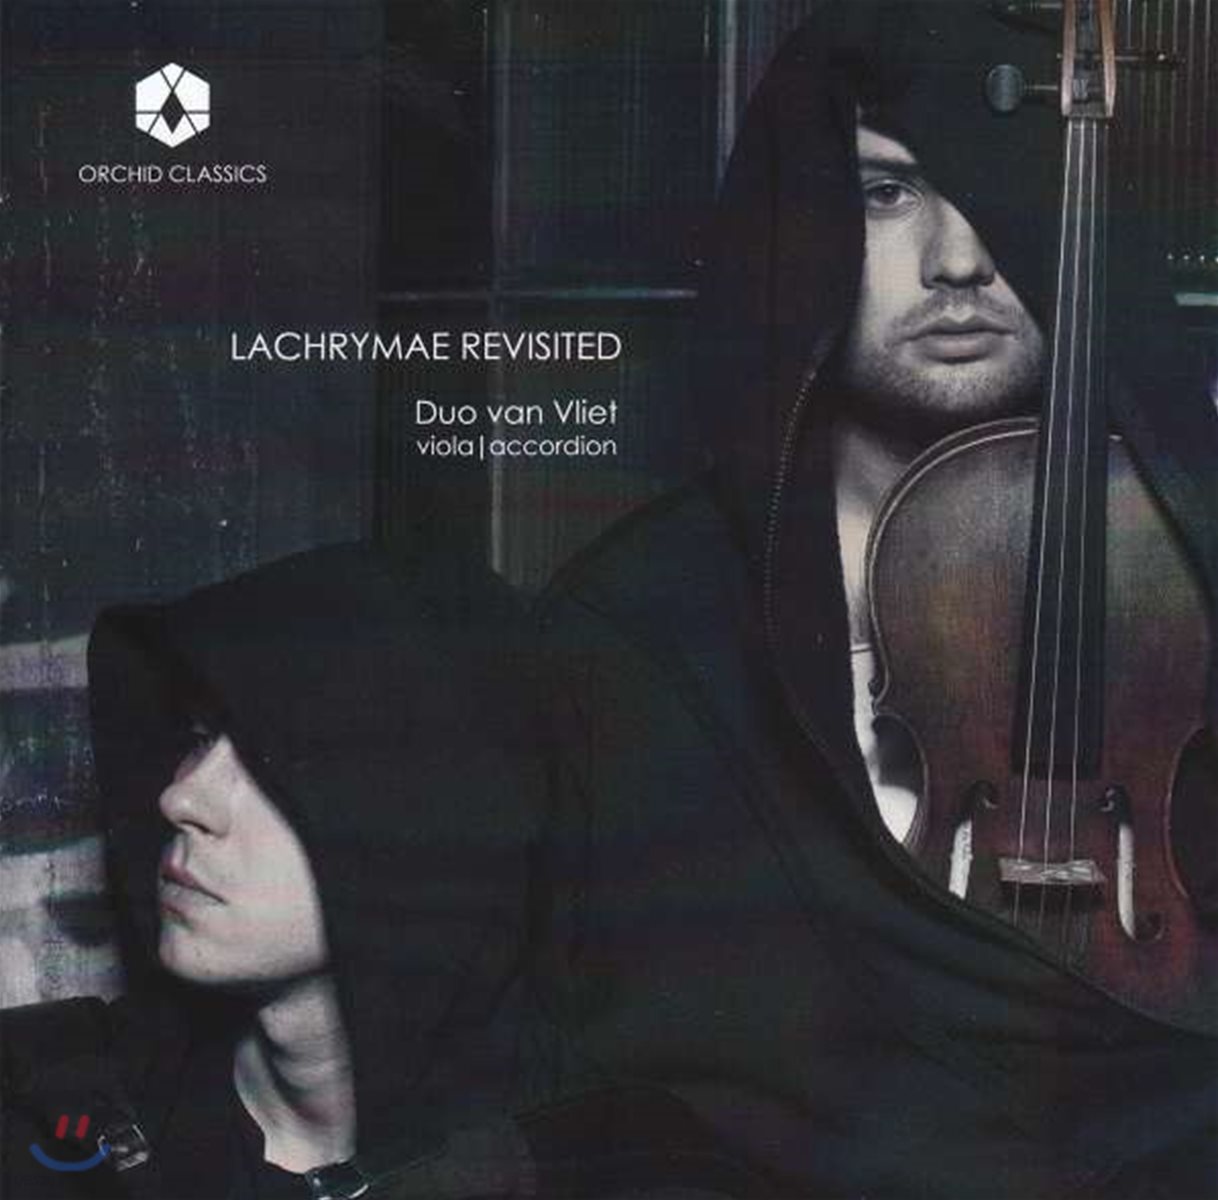 Duo van Vliet 새롭게 해석한 다울랜드의 ‘눈물’ - 듀오 반 블리에트 [비올라, 아코디언 이중주 연주반] (Lachrymae Revisited)